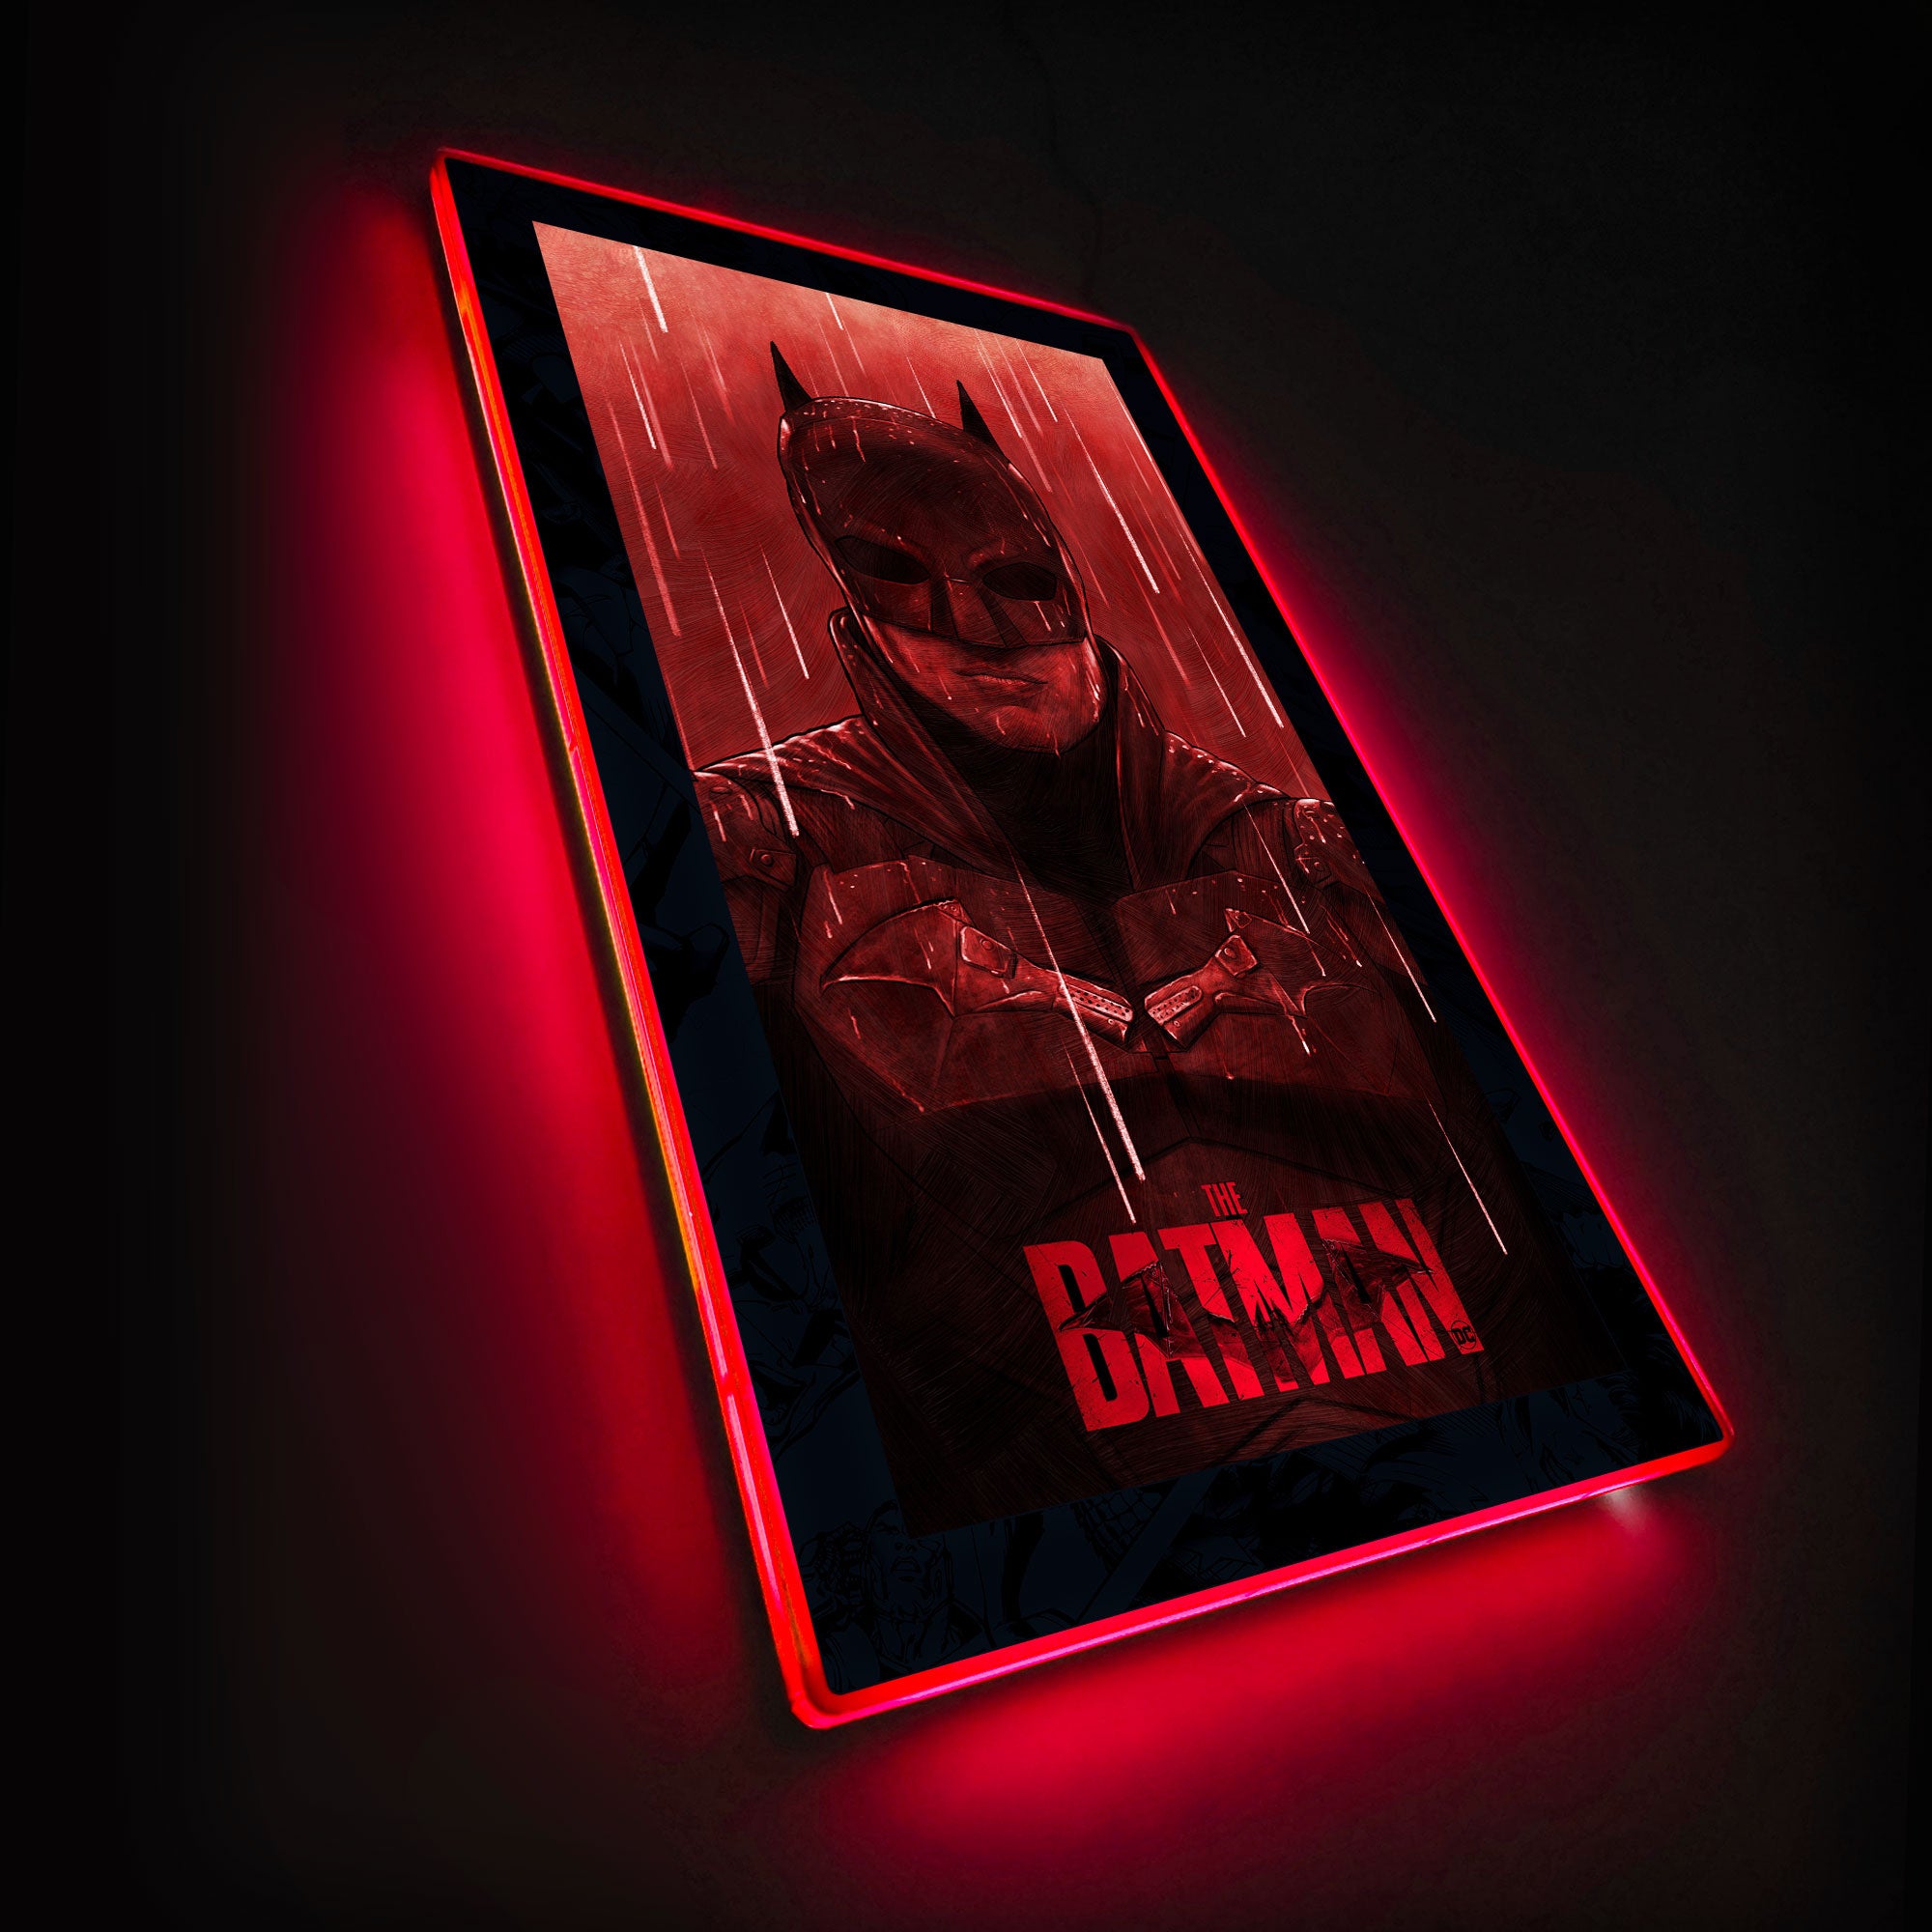 Wall Art Print Batman - Vengeance, Gifts & Merchandise